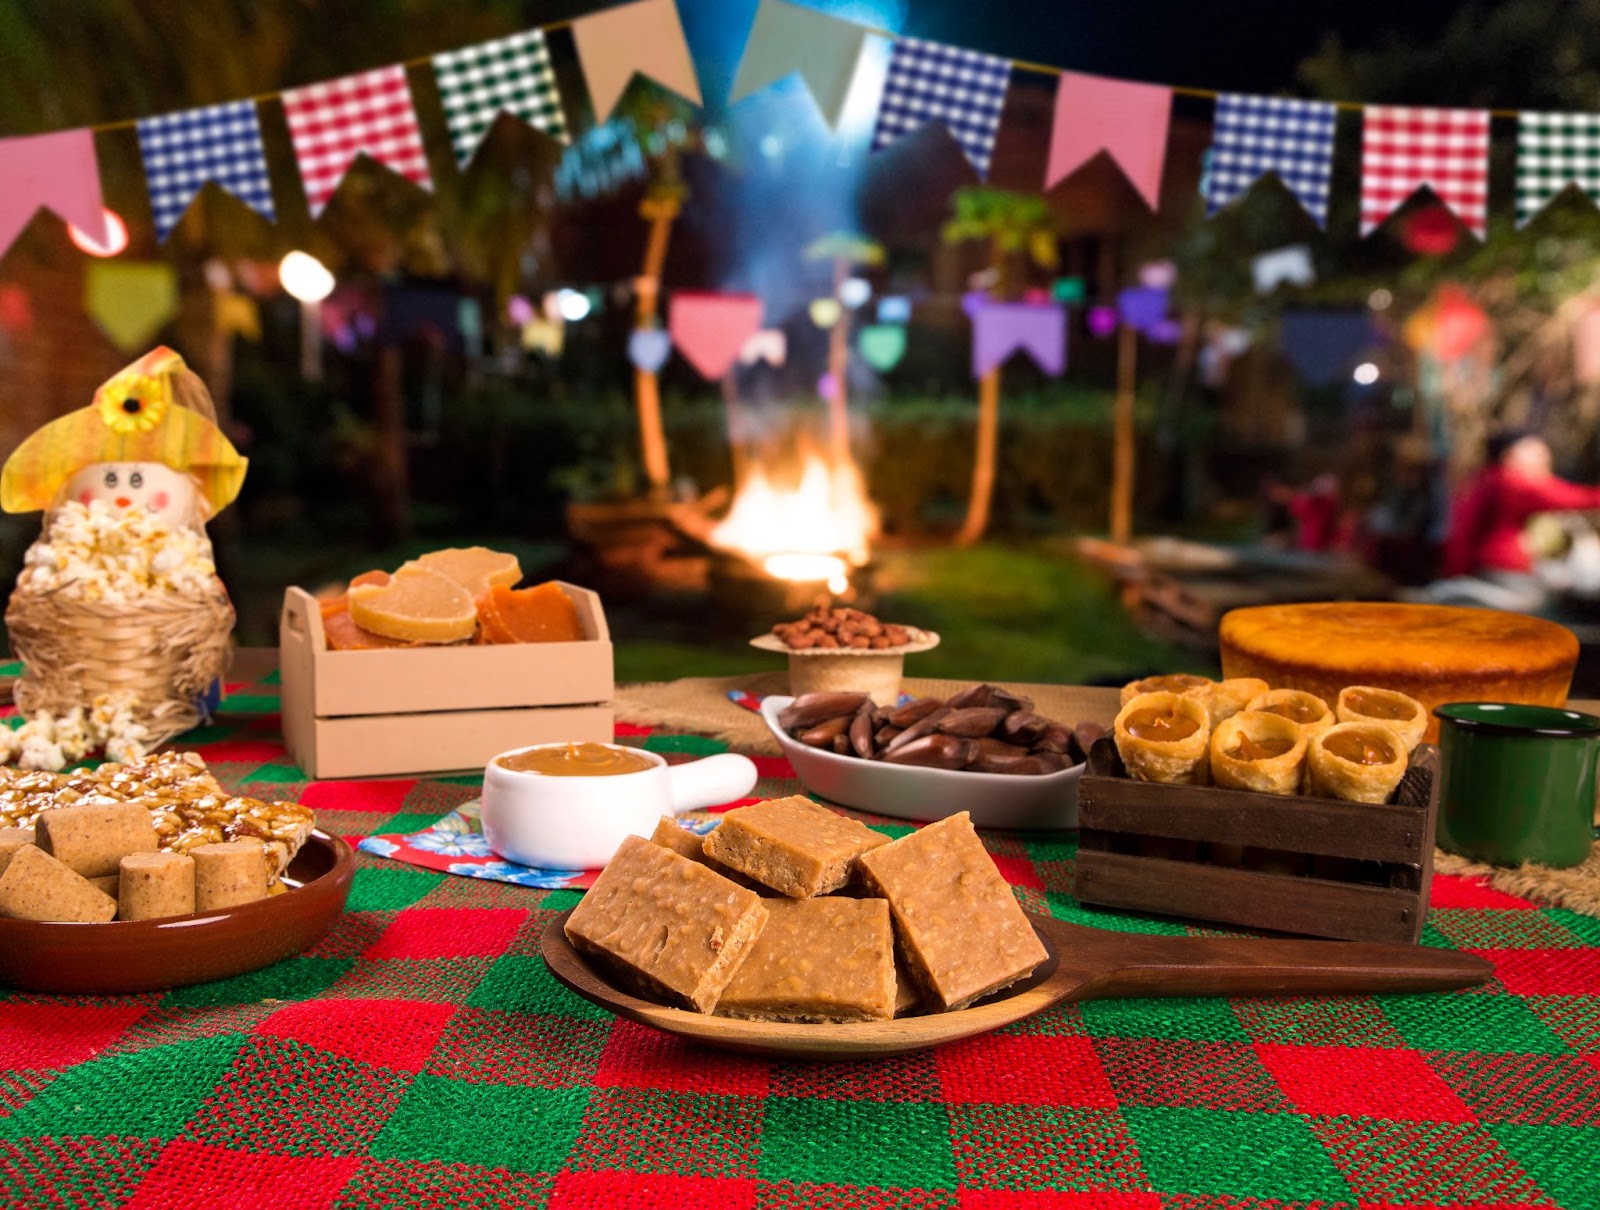 Mesa com toalha quadriculada verde e vermelha. Sobre ela estão vários pratos típicos juninos como pinhão, paçoca e bolo de milho. Ao fundo, aparece uma fogueira desfocada e algumas bandeirolas coloridas.